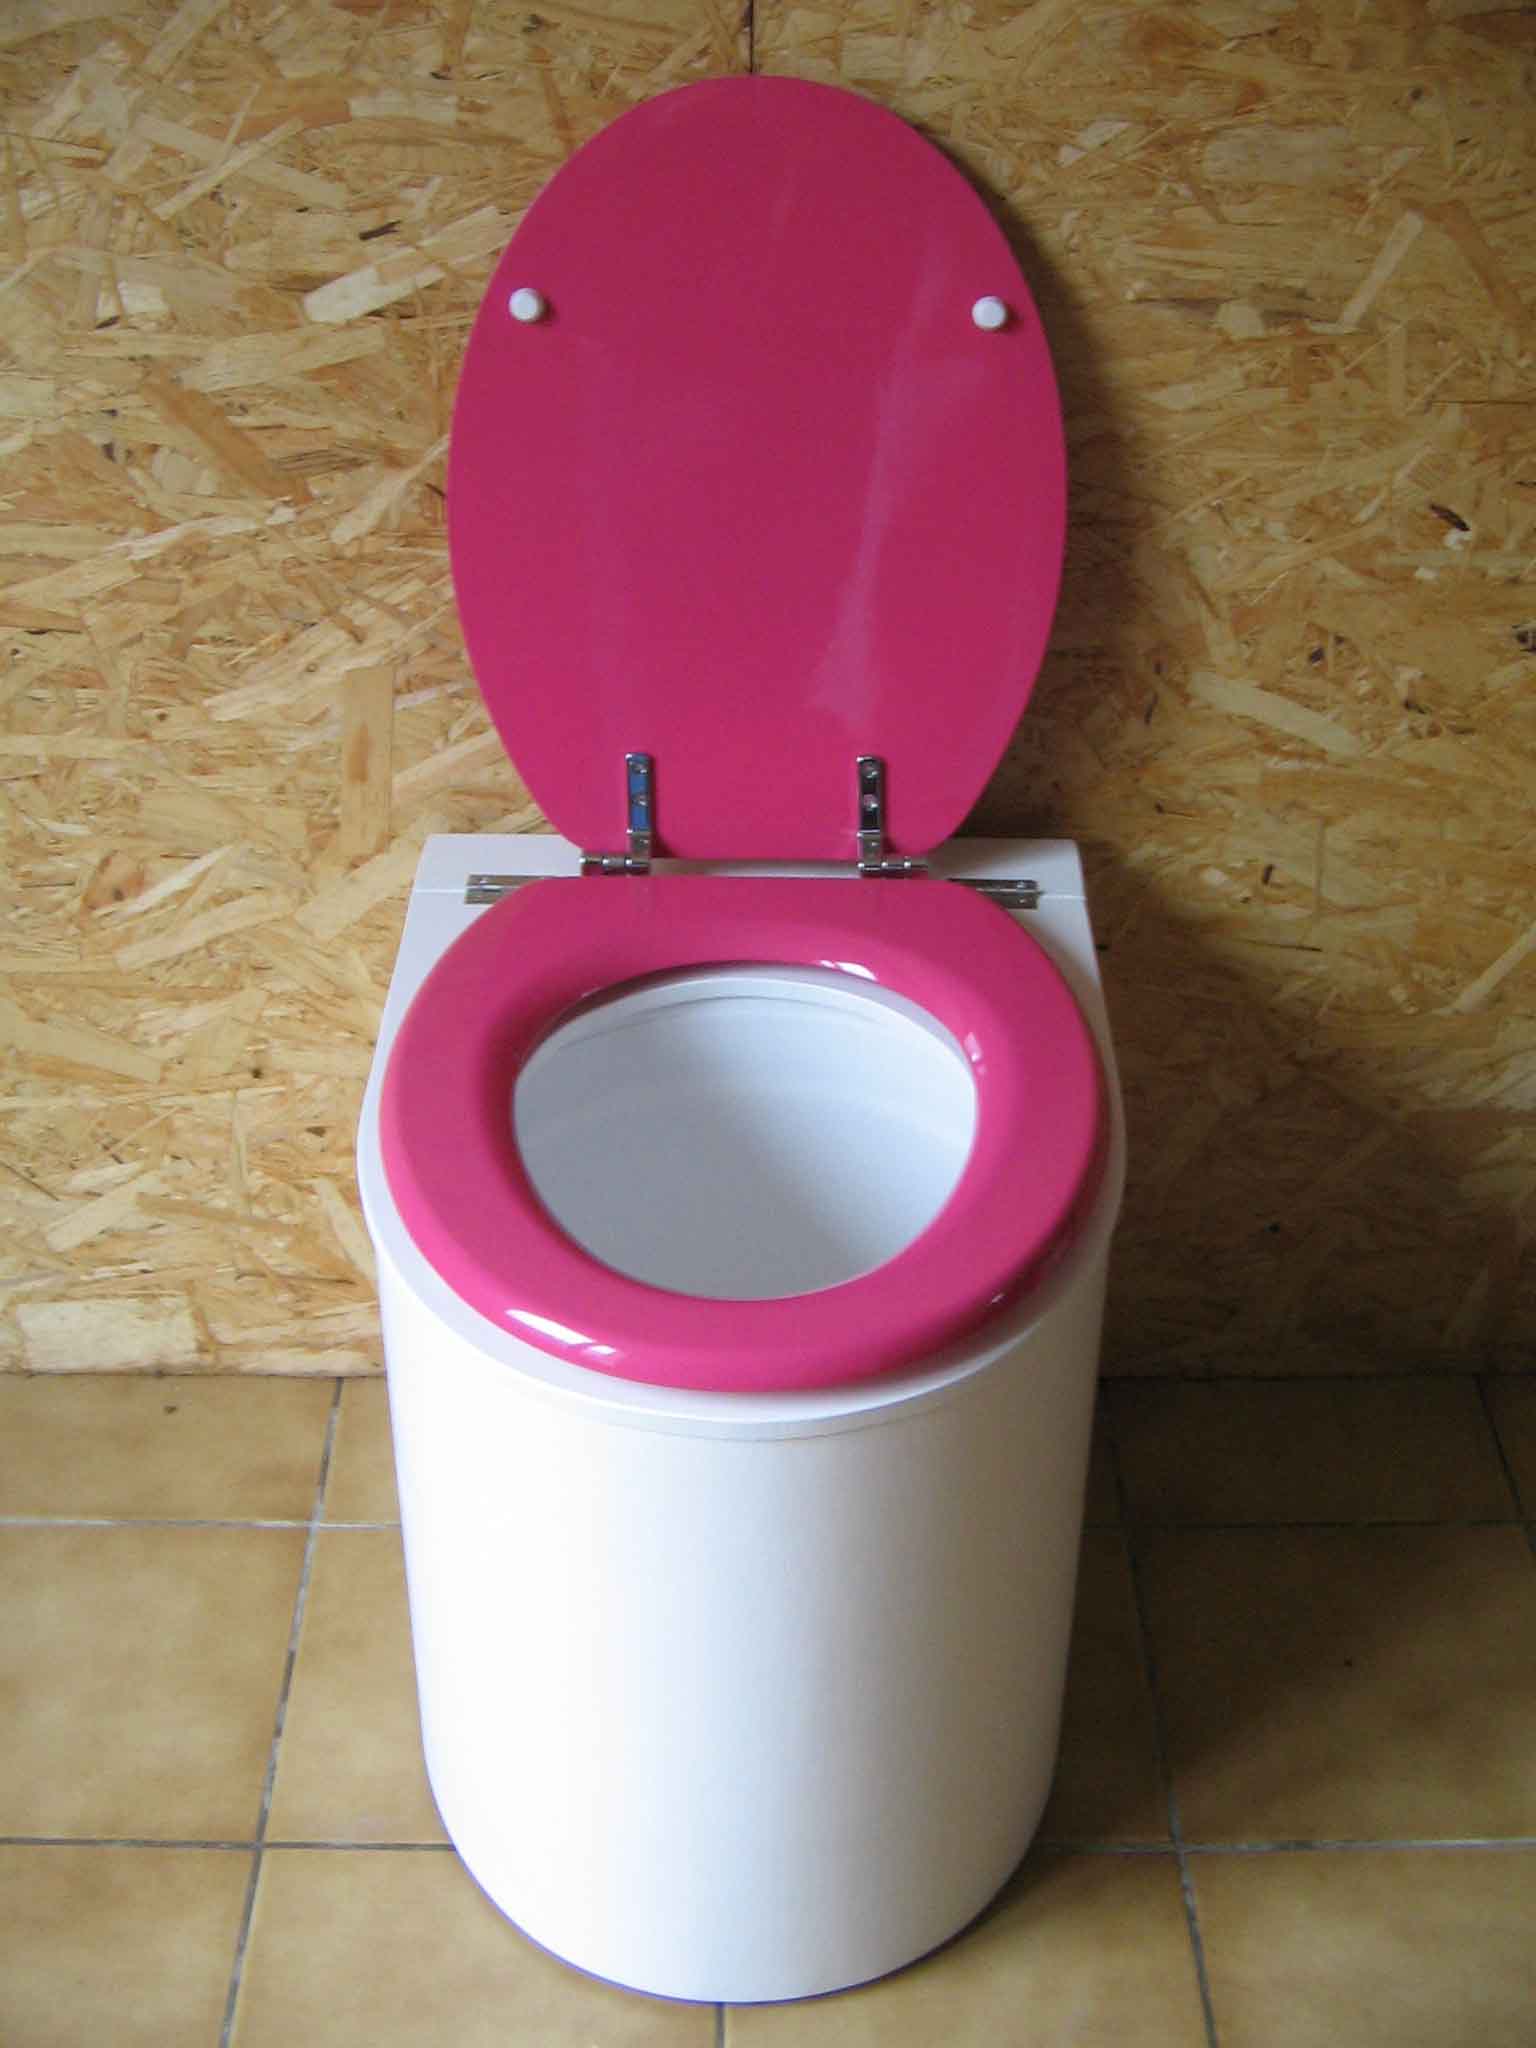 Toilette seche design blanche et rose